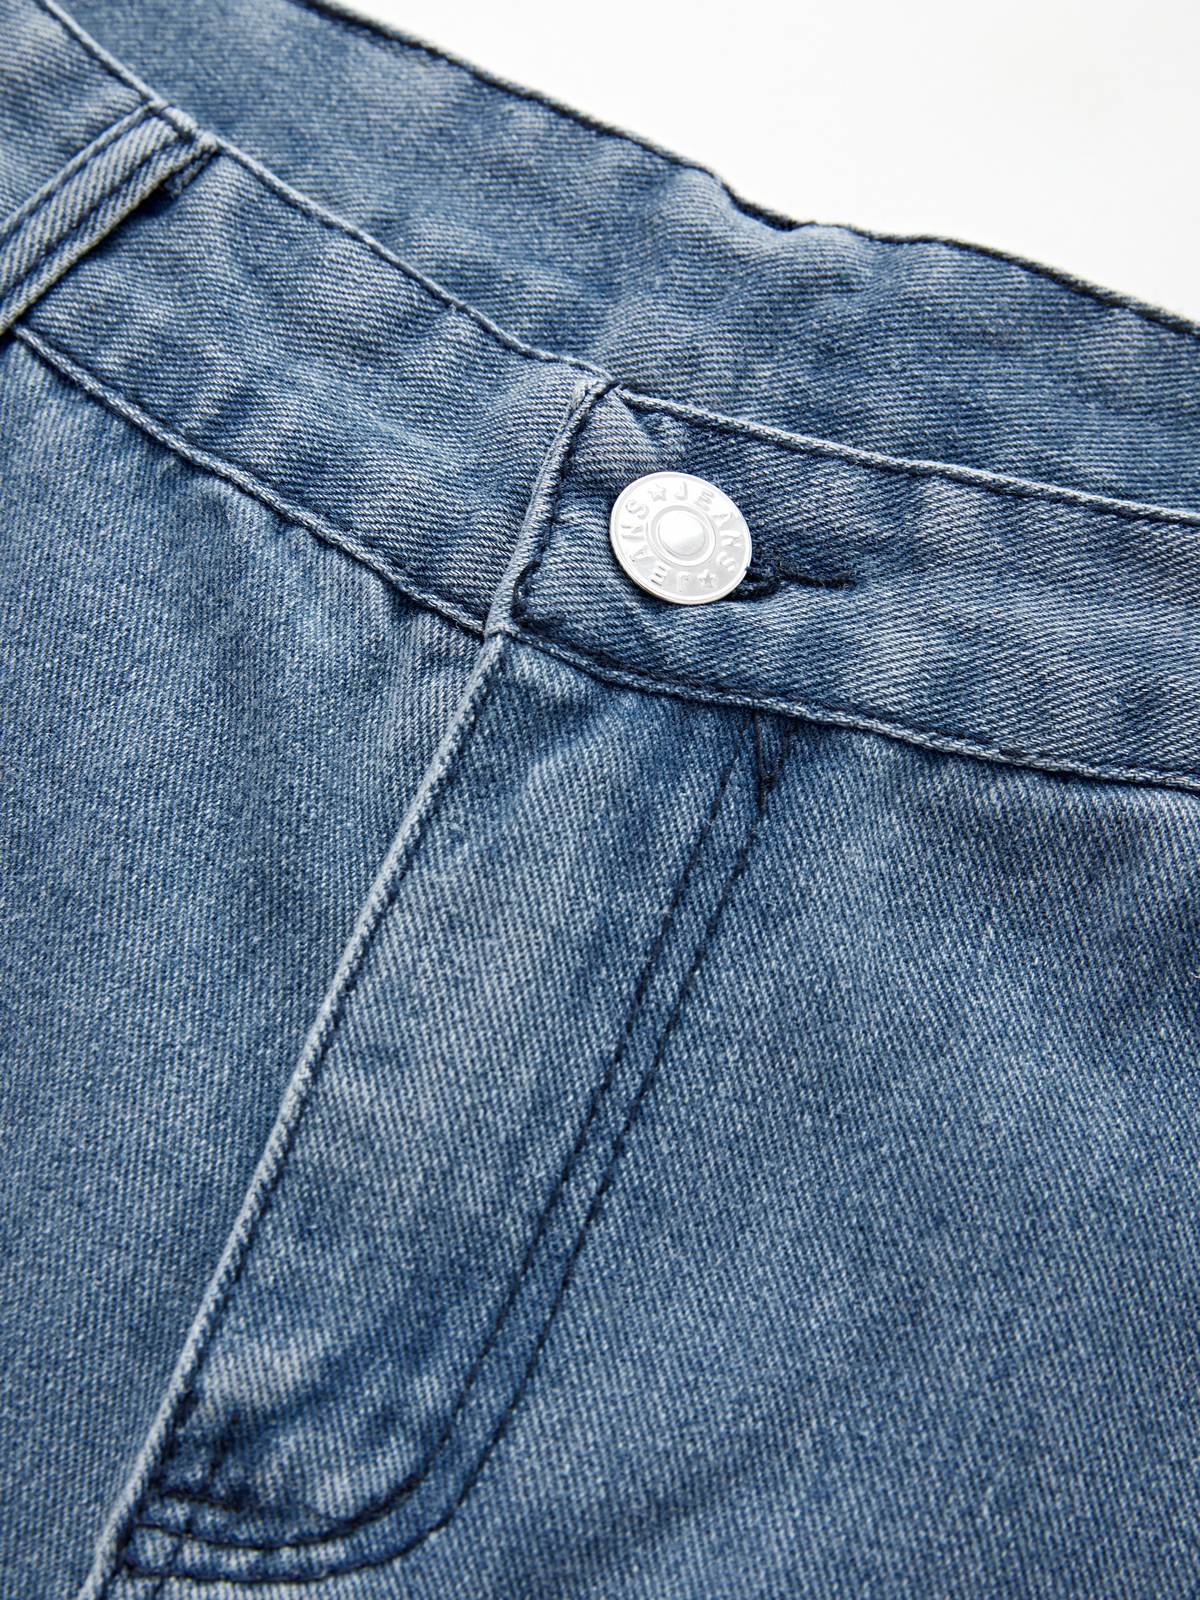 Men's Vintage Washed Loose Jeans